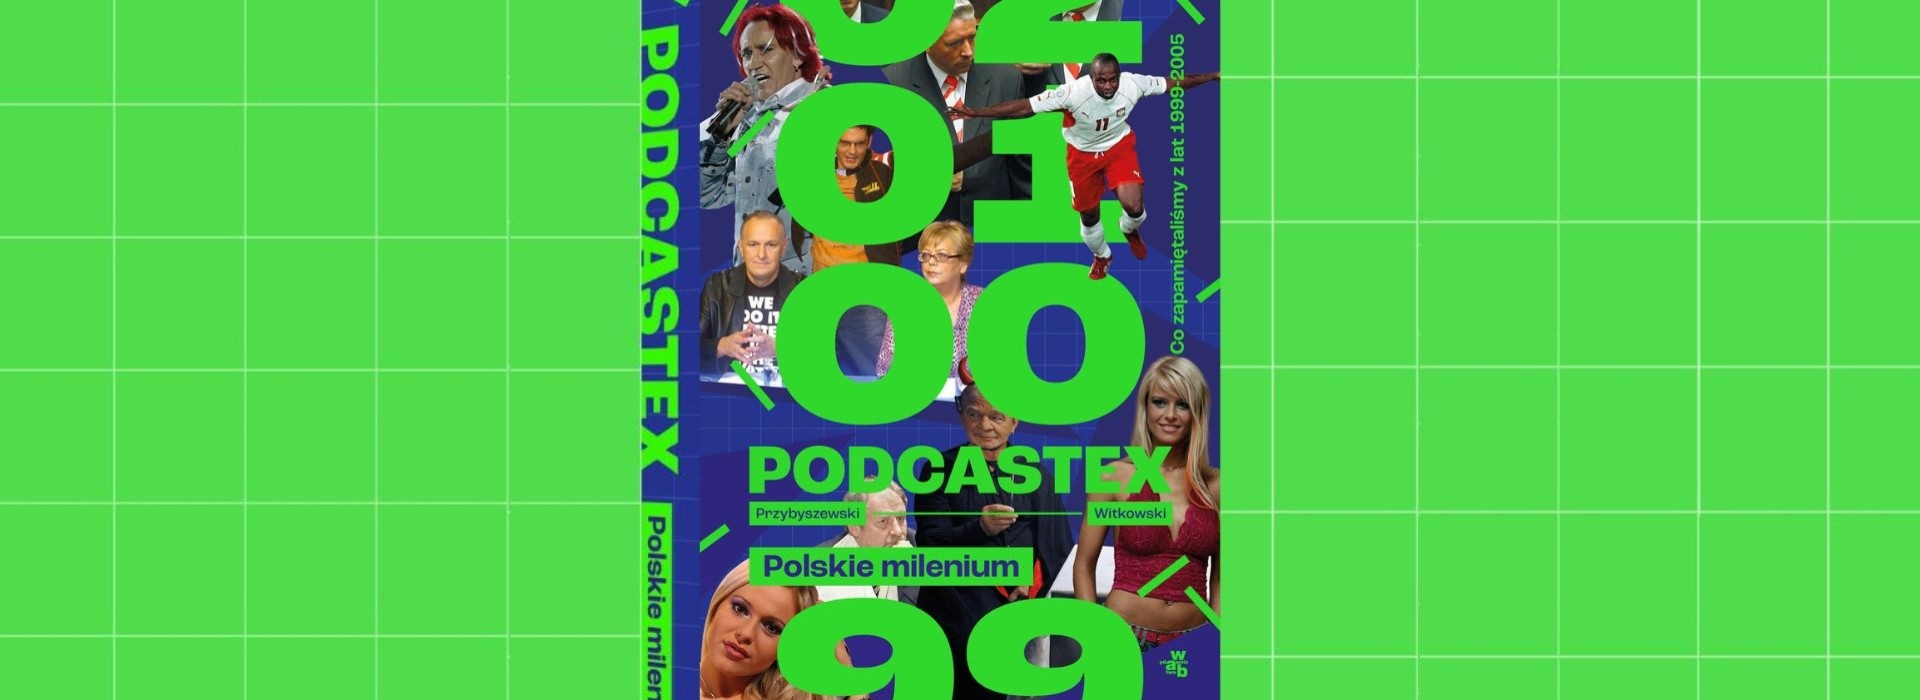 Twórcy „Podcastexu” o swojej książce “Polskie Milenium. Co zapamiętaliśmy z lat 1999-2005?”